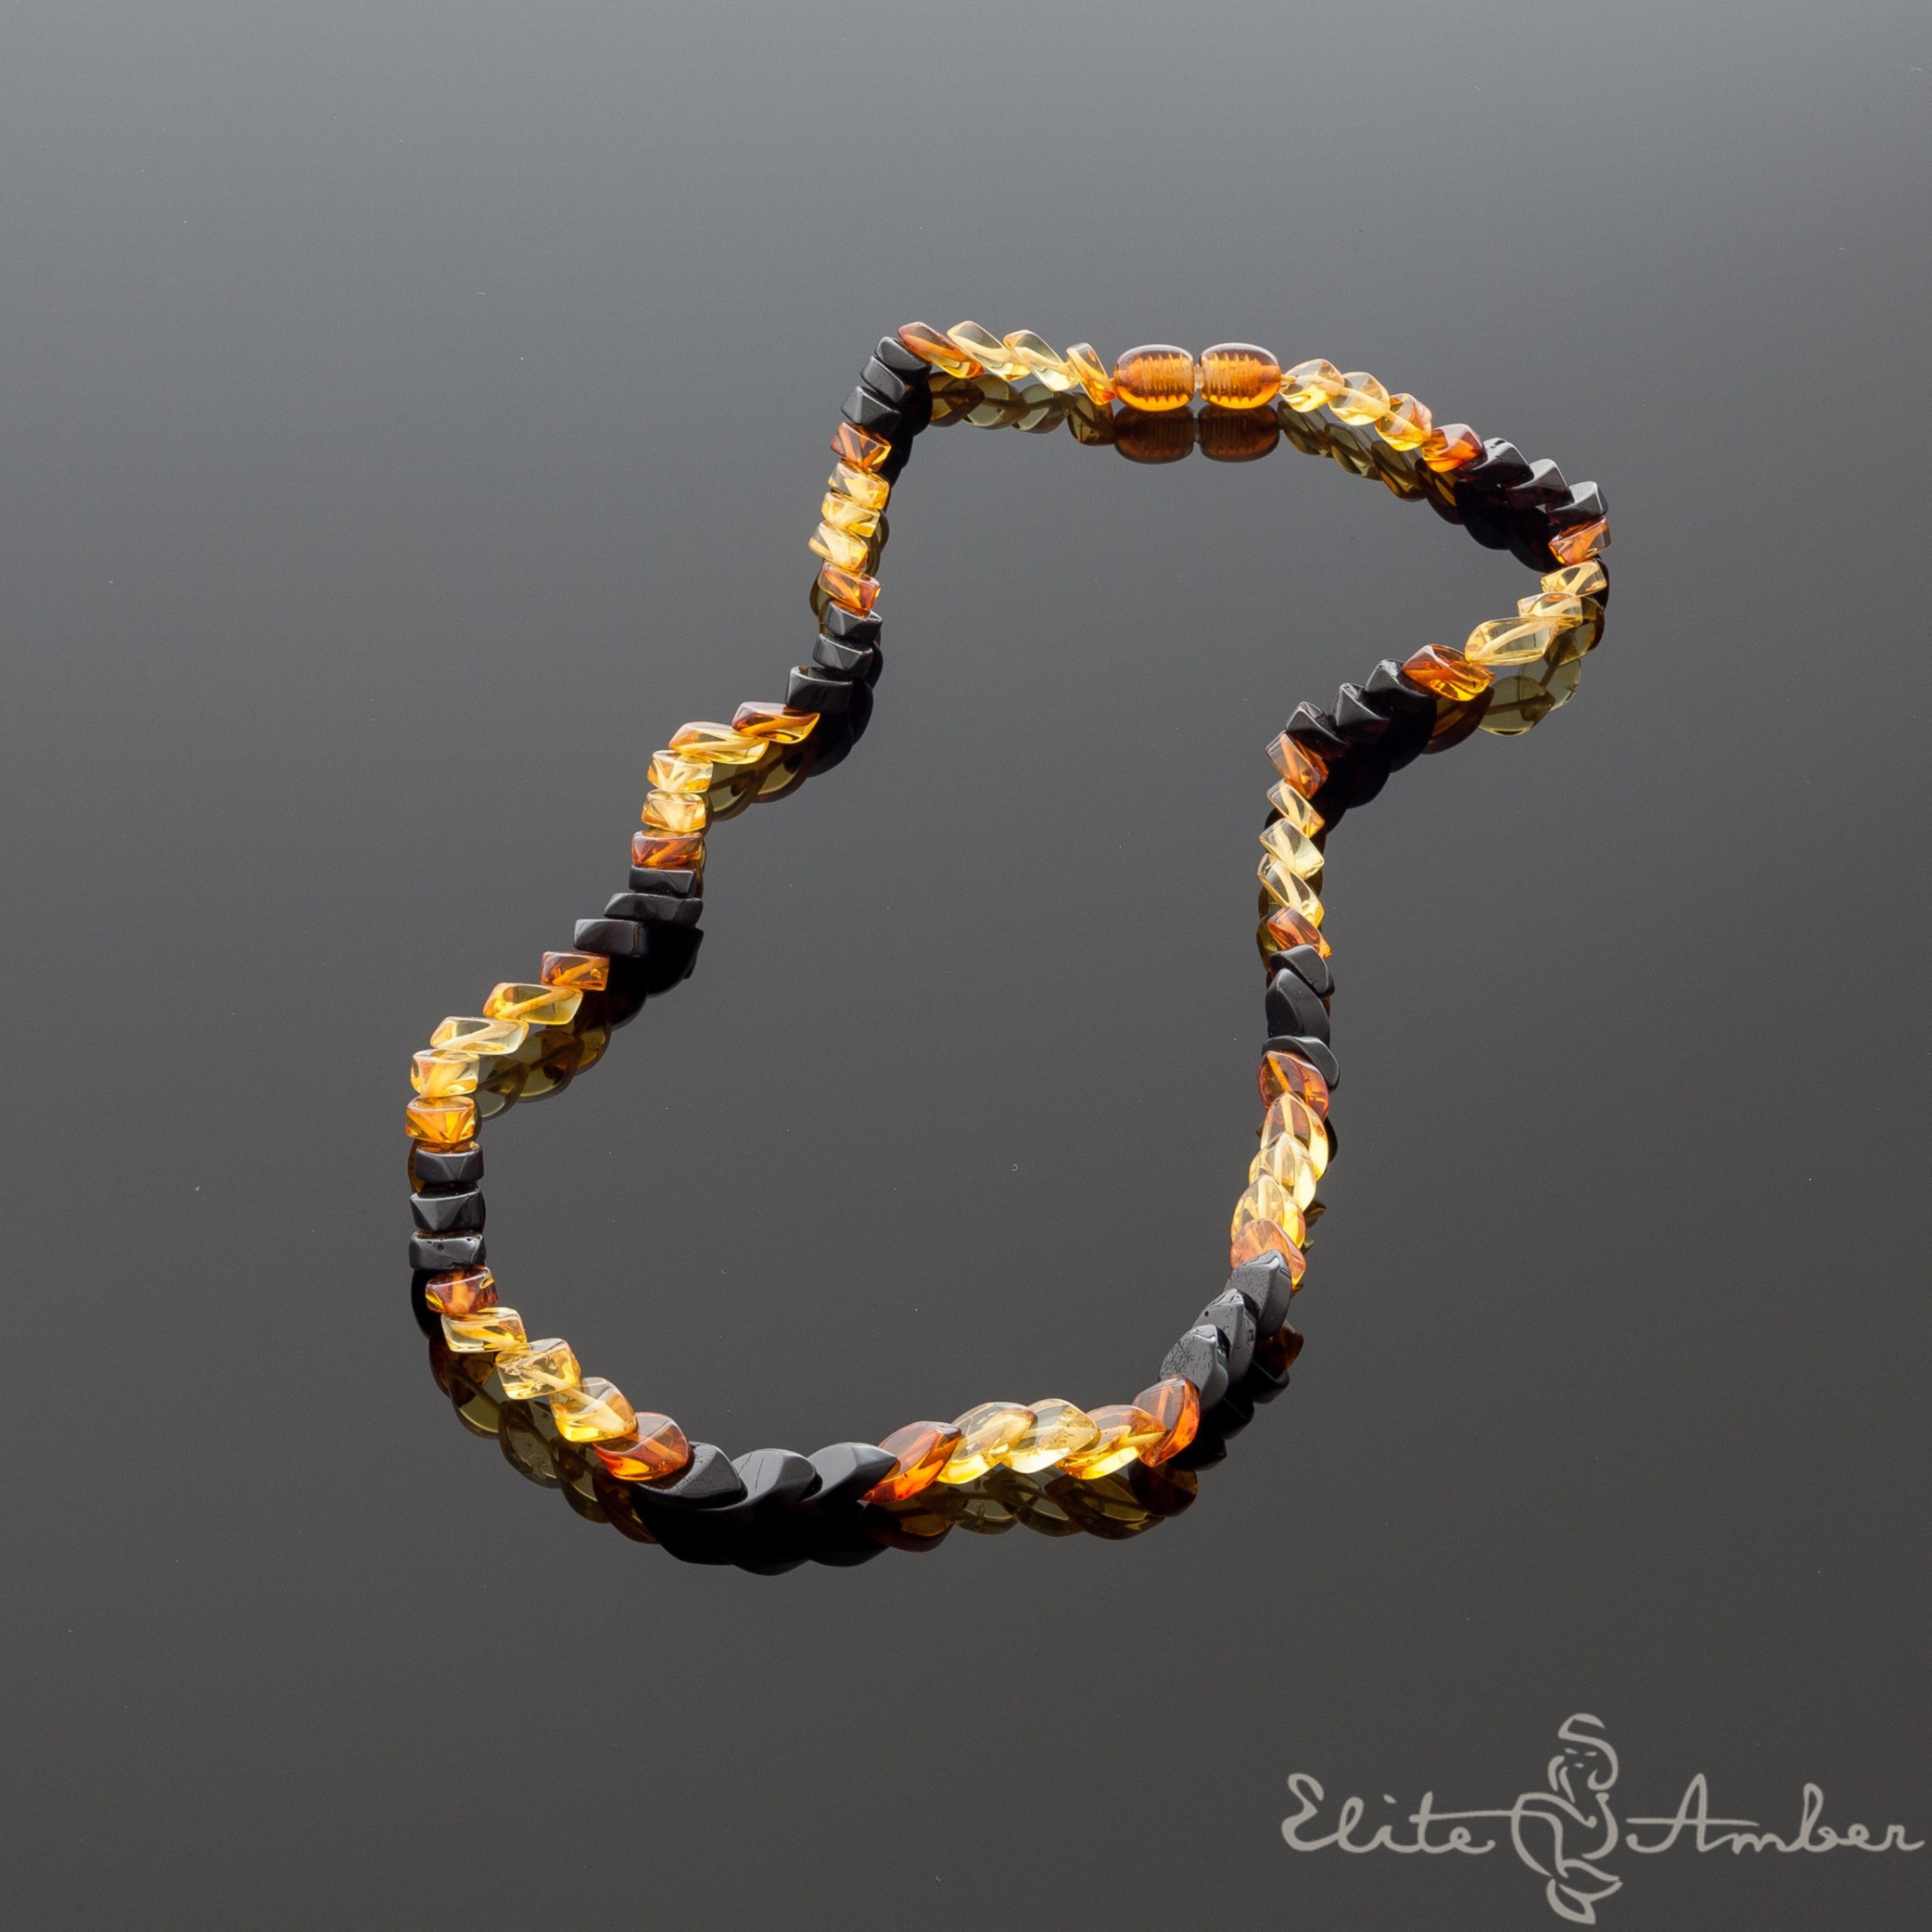 Amber necklace "Multi color rain"